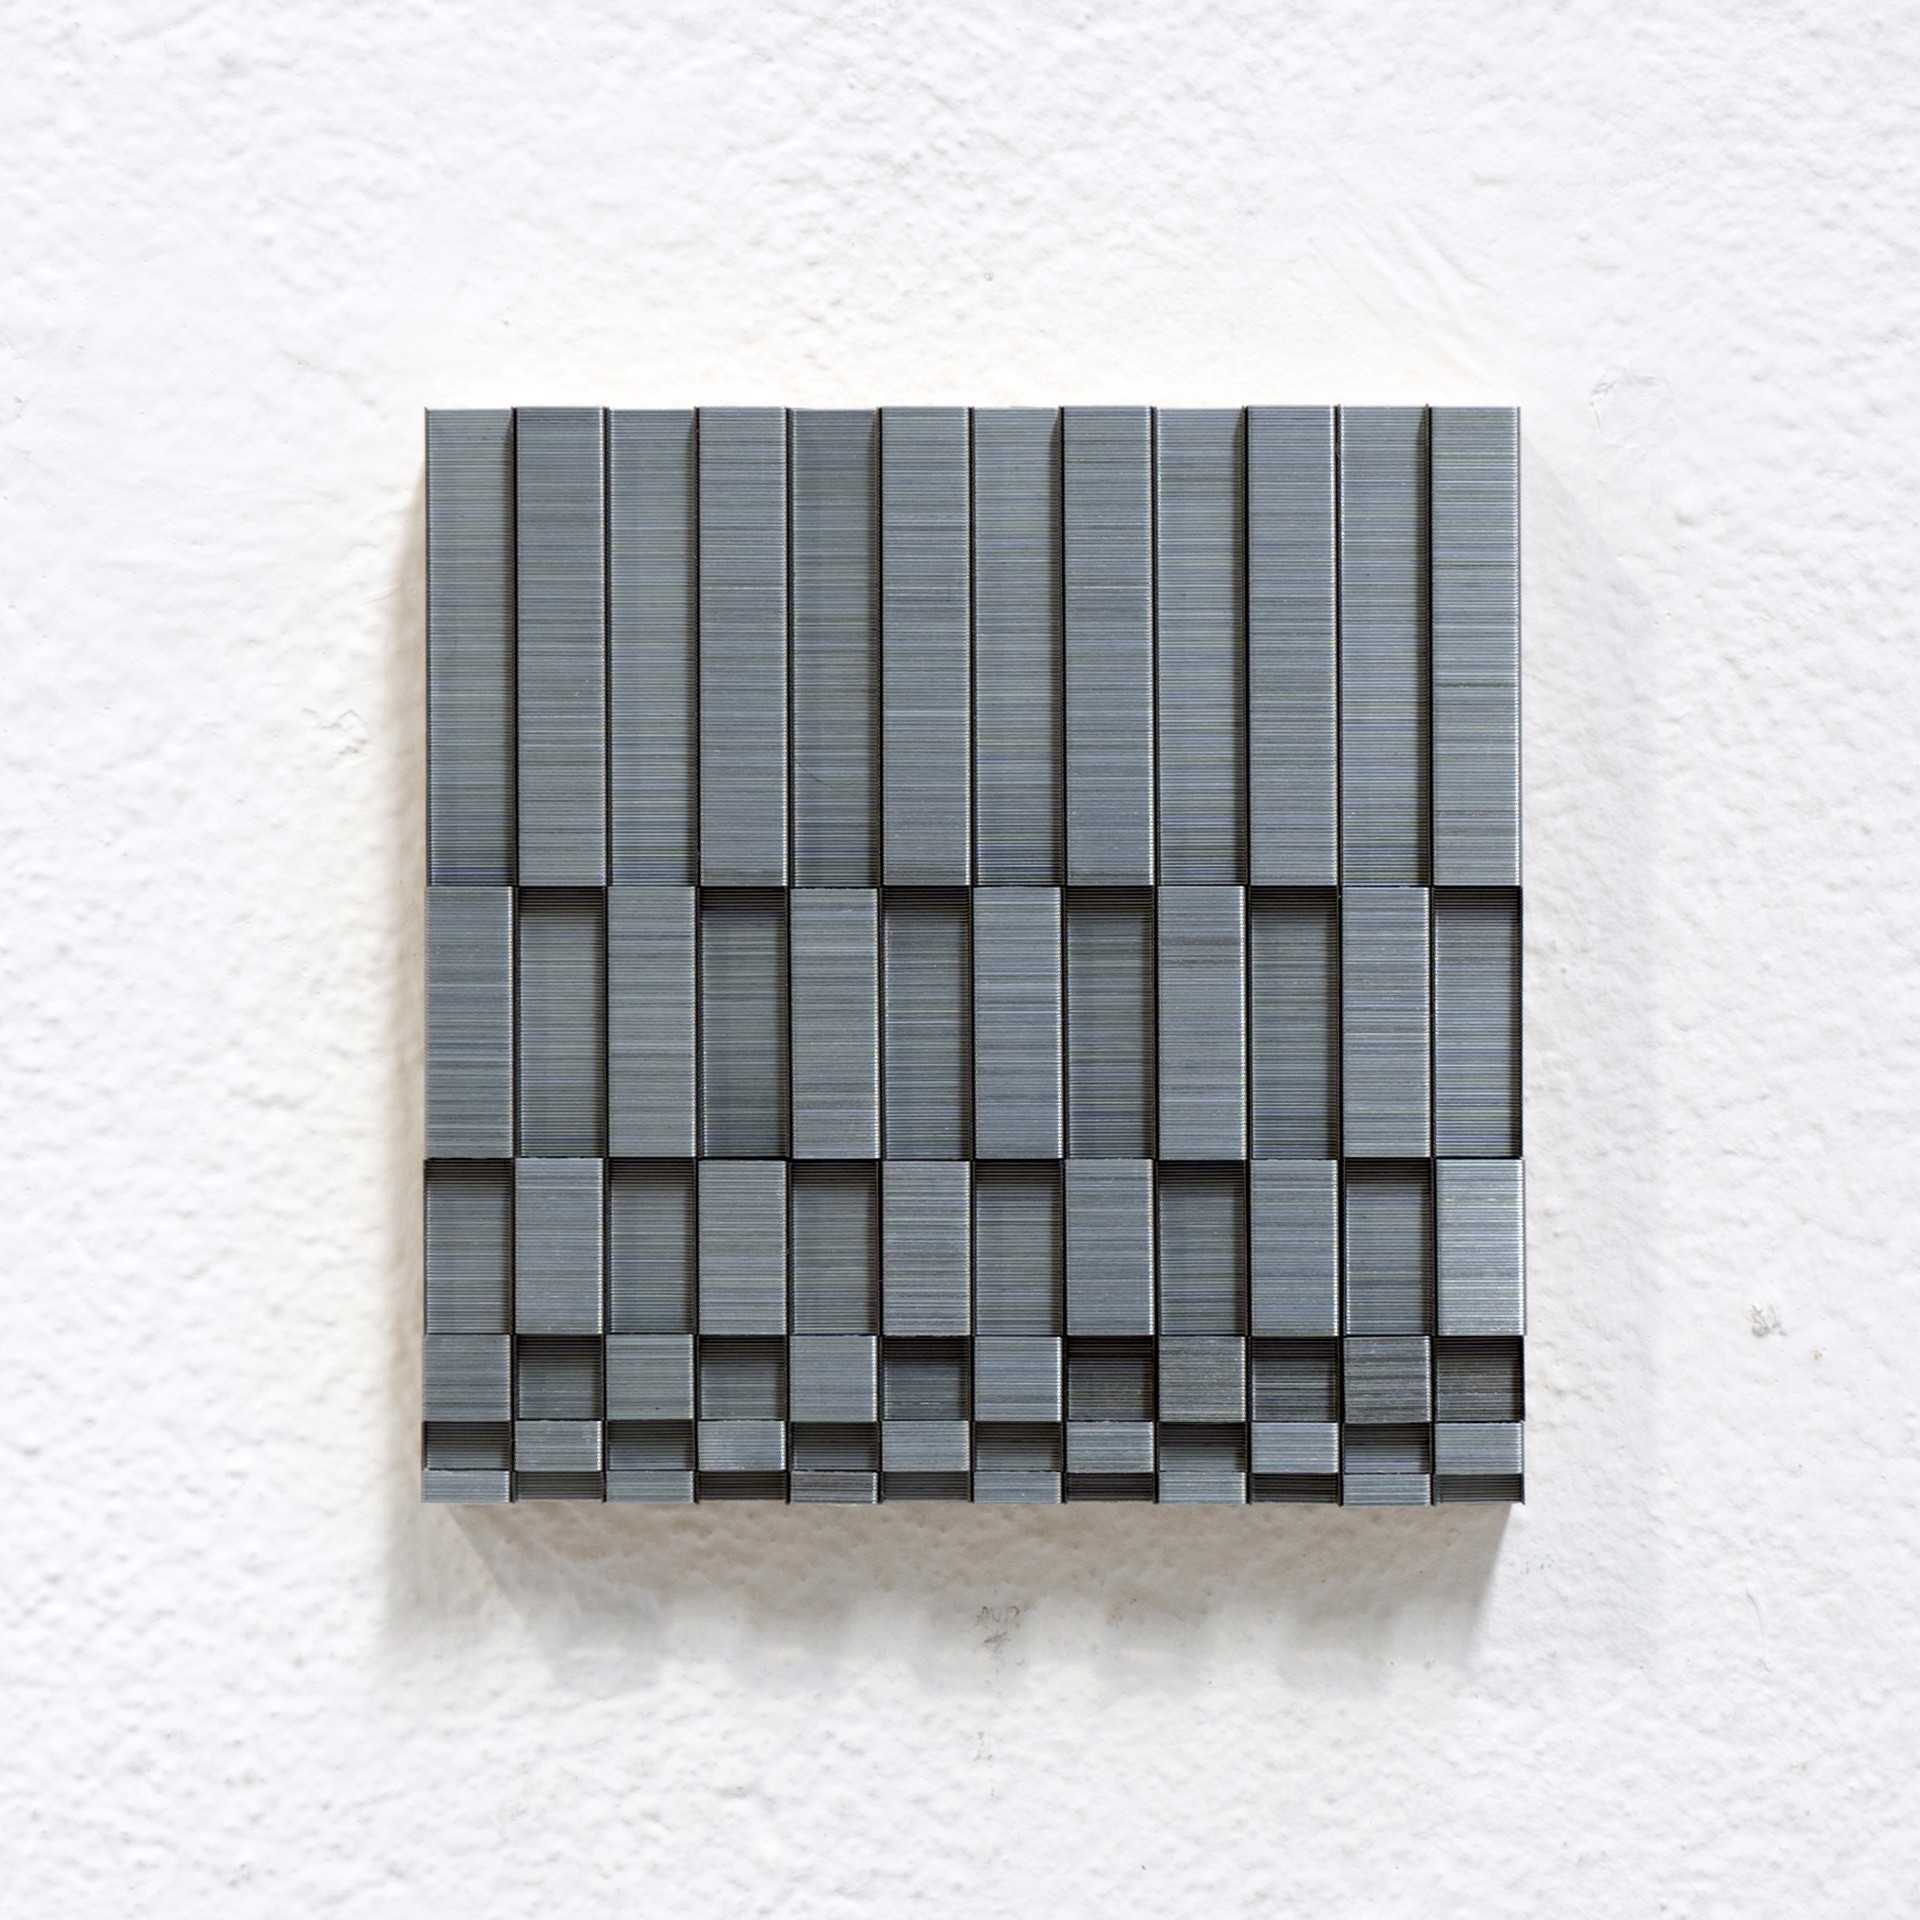 Checkerboard Variation 6 x 6 No. 1 by Evan Stoler